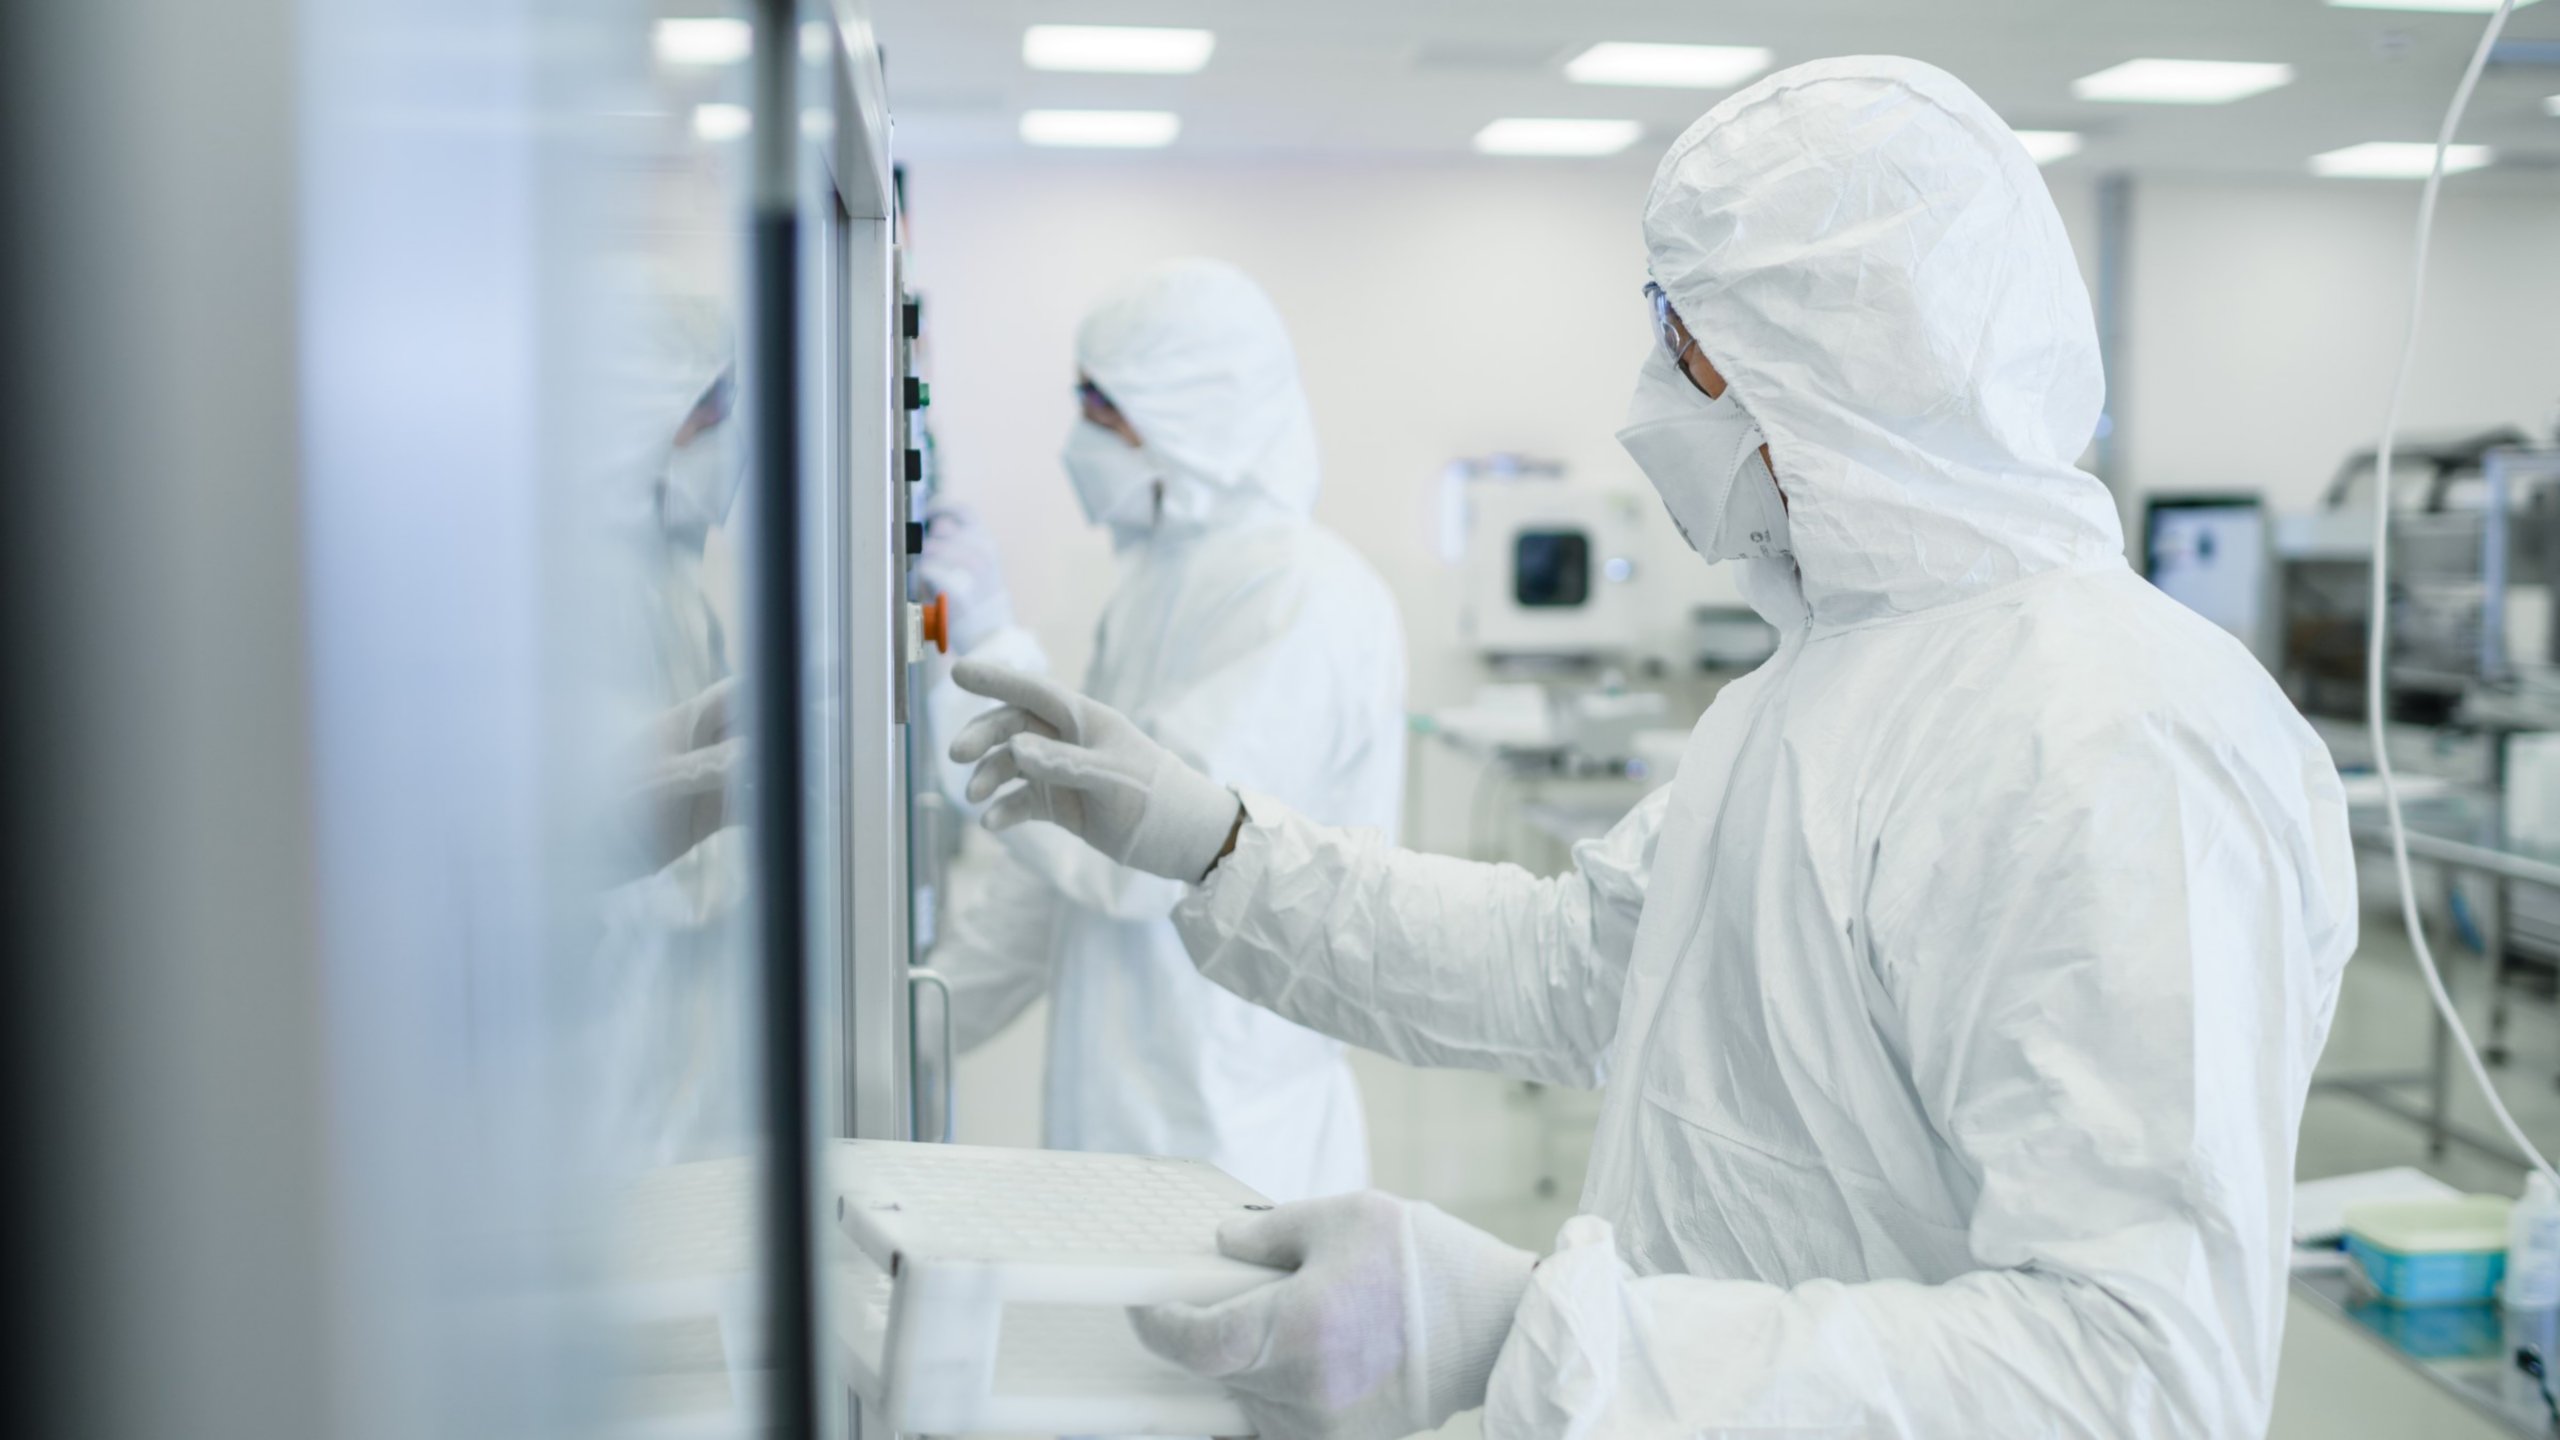 Un spécialiste des sciences de la vie portant une combinaison, un masque et des lunettes de protection examine une ligne de production pharmaceutique automatisée dans une unité de fabrication.